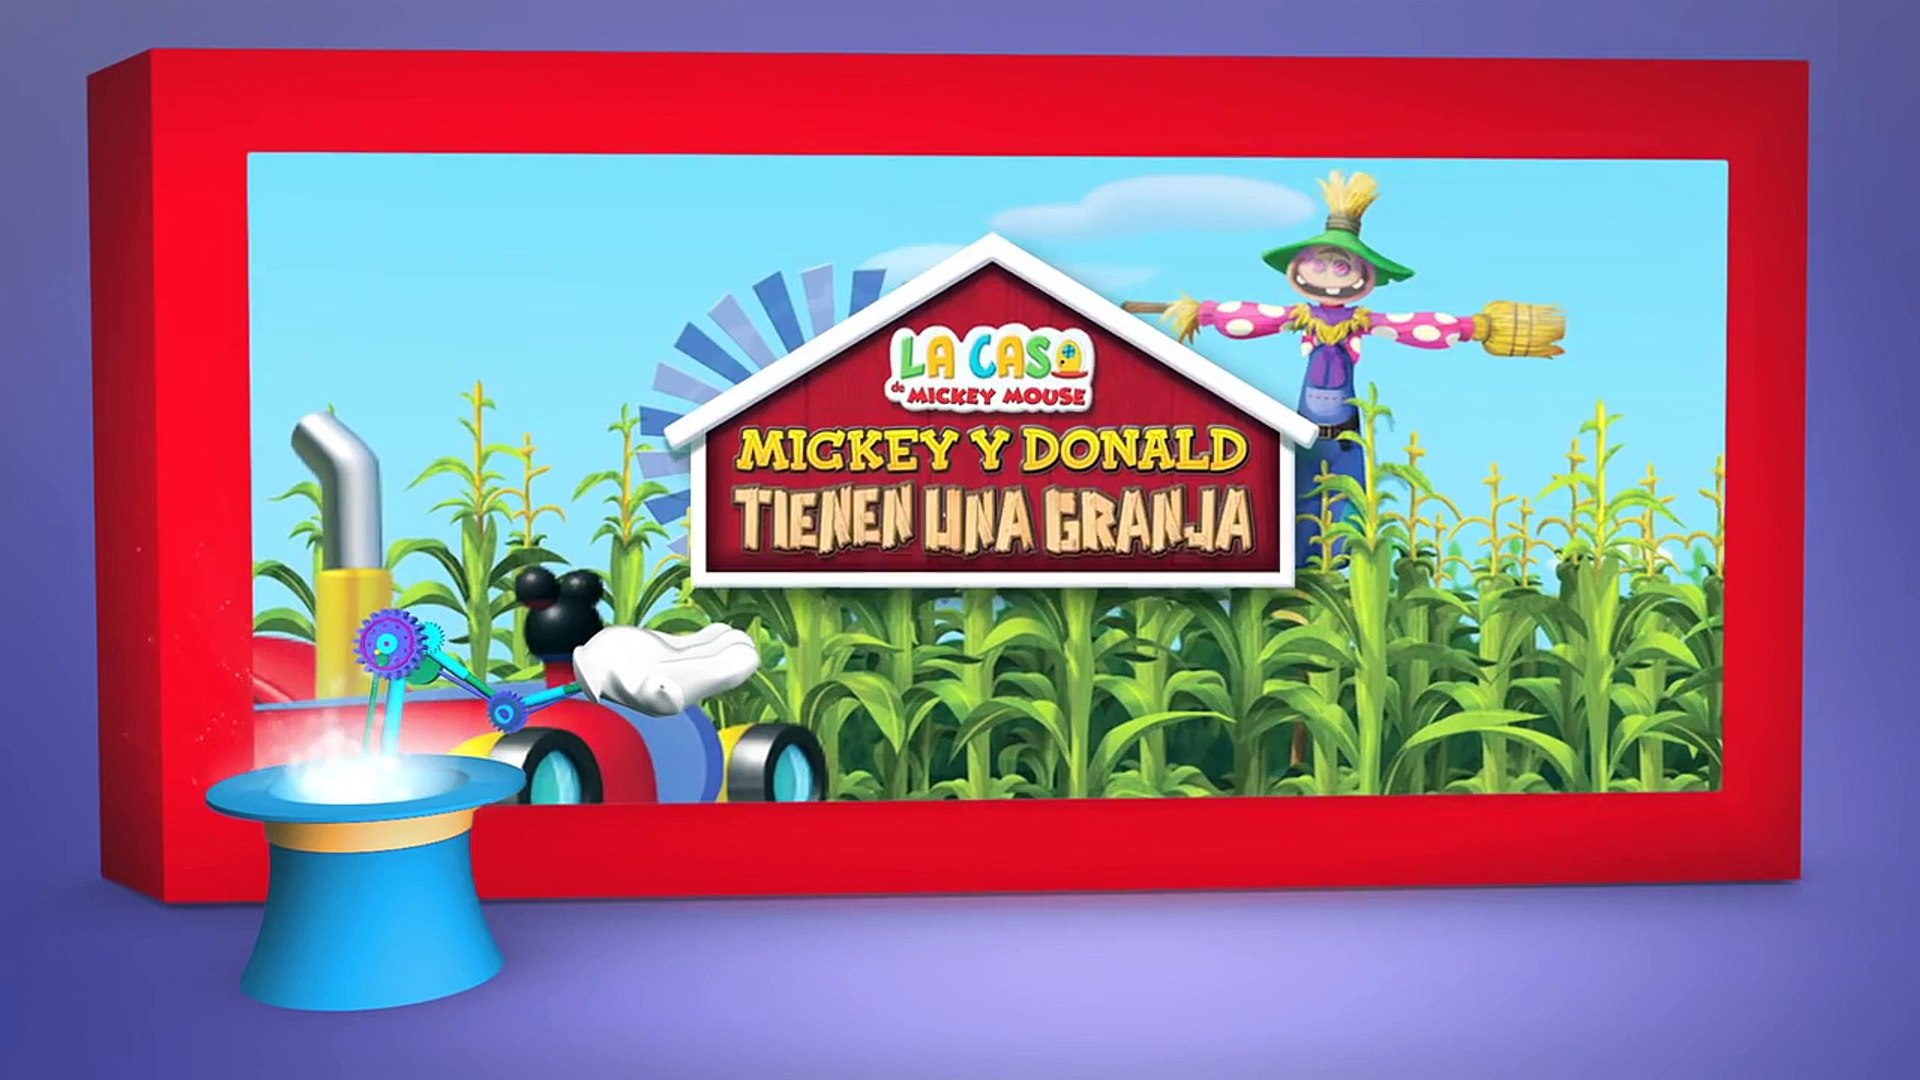 La Casa de Mickey Mouse_ Mickey y Donald tienen una granja - Datos curiosos  - Vídeo Dailymotion